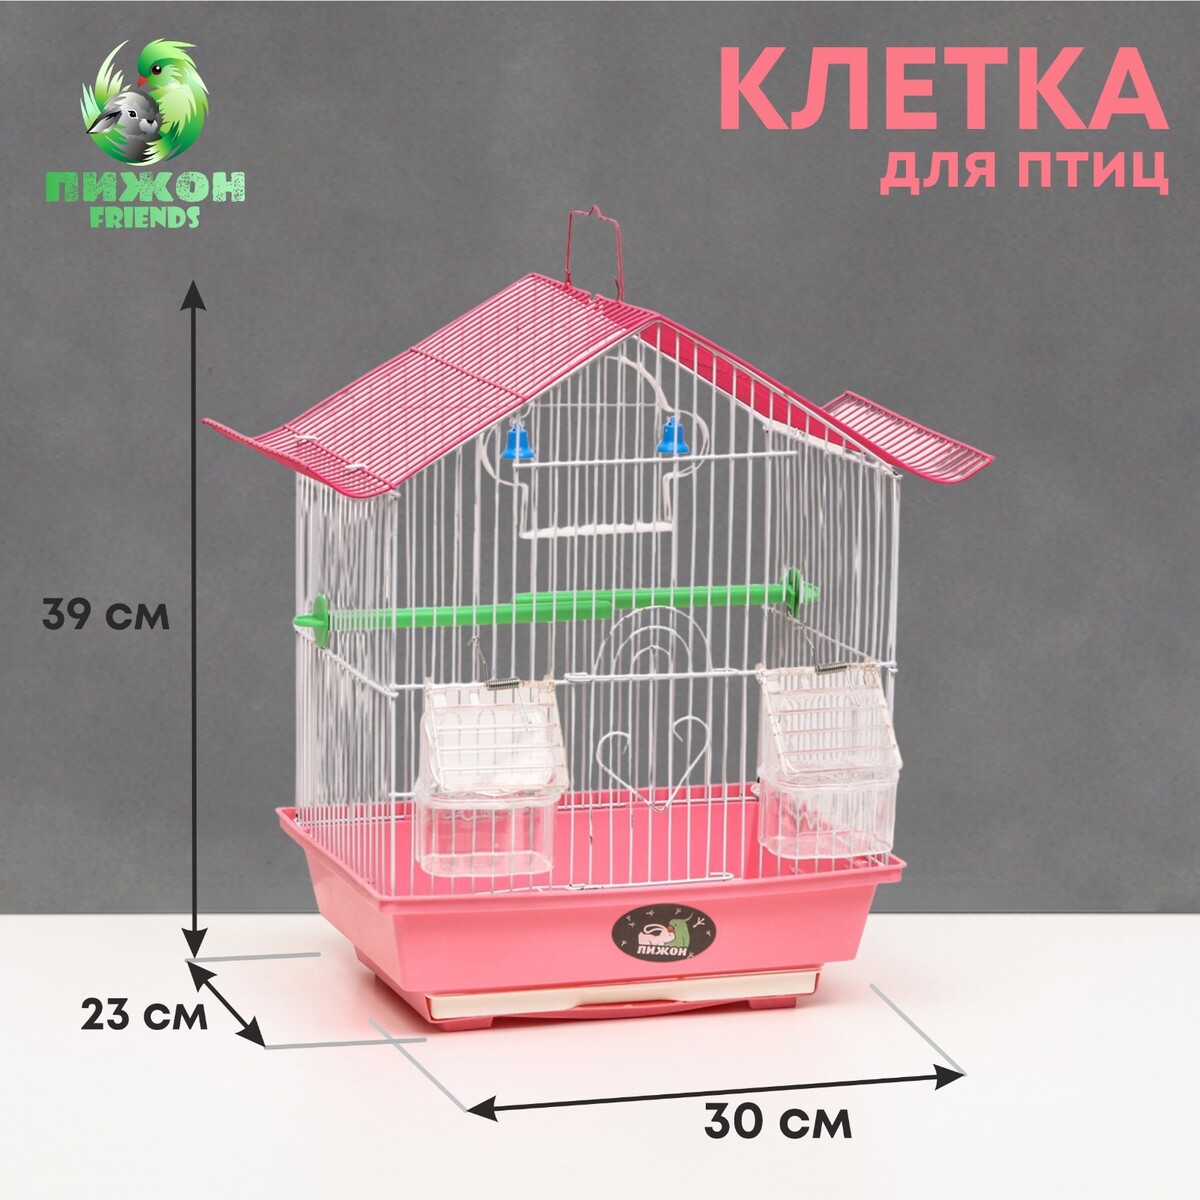 Клетка для птиц укомплектованная bd-1/1d, 30 х 23 х 39 см, розовая клетка для птиц овальная с кормушками 30 х 23 х 39 см розовая